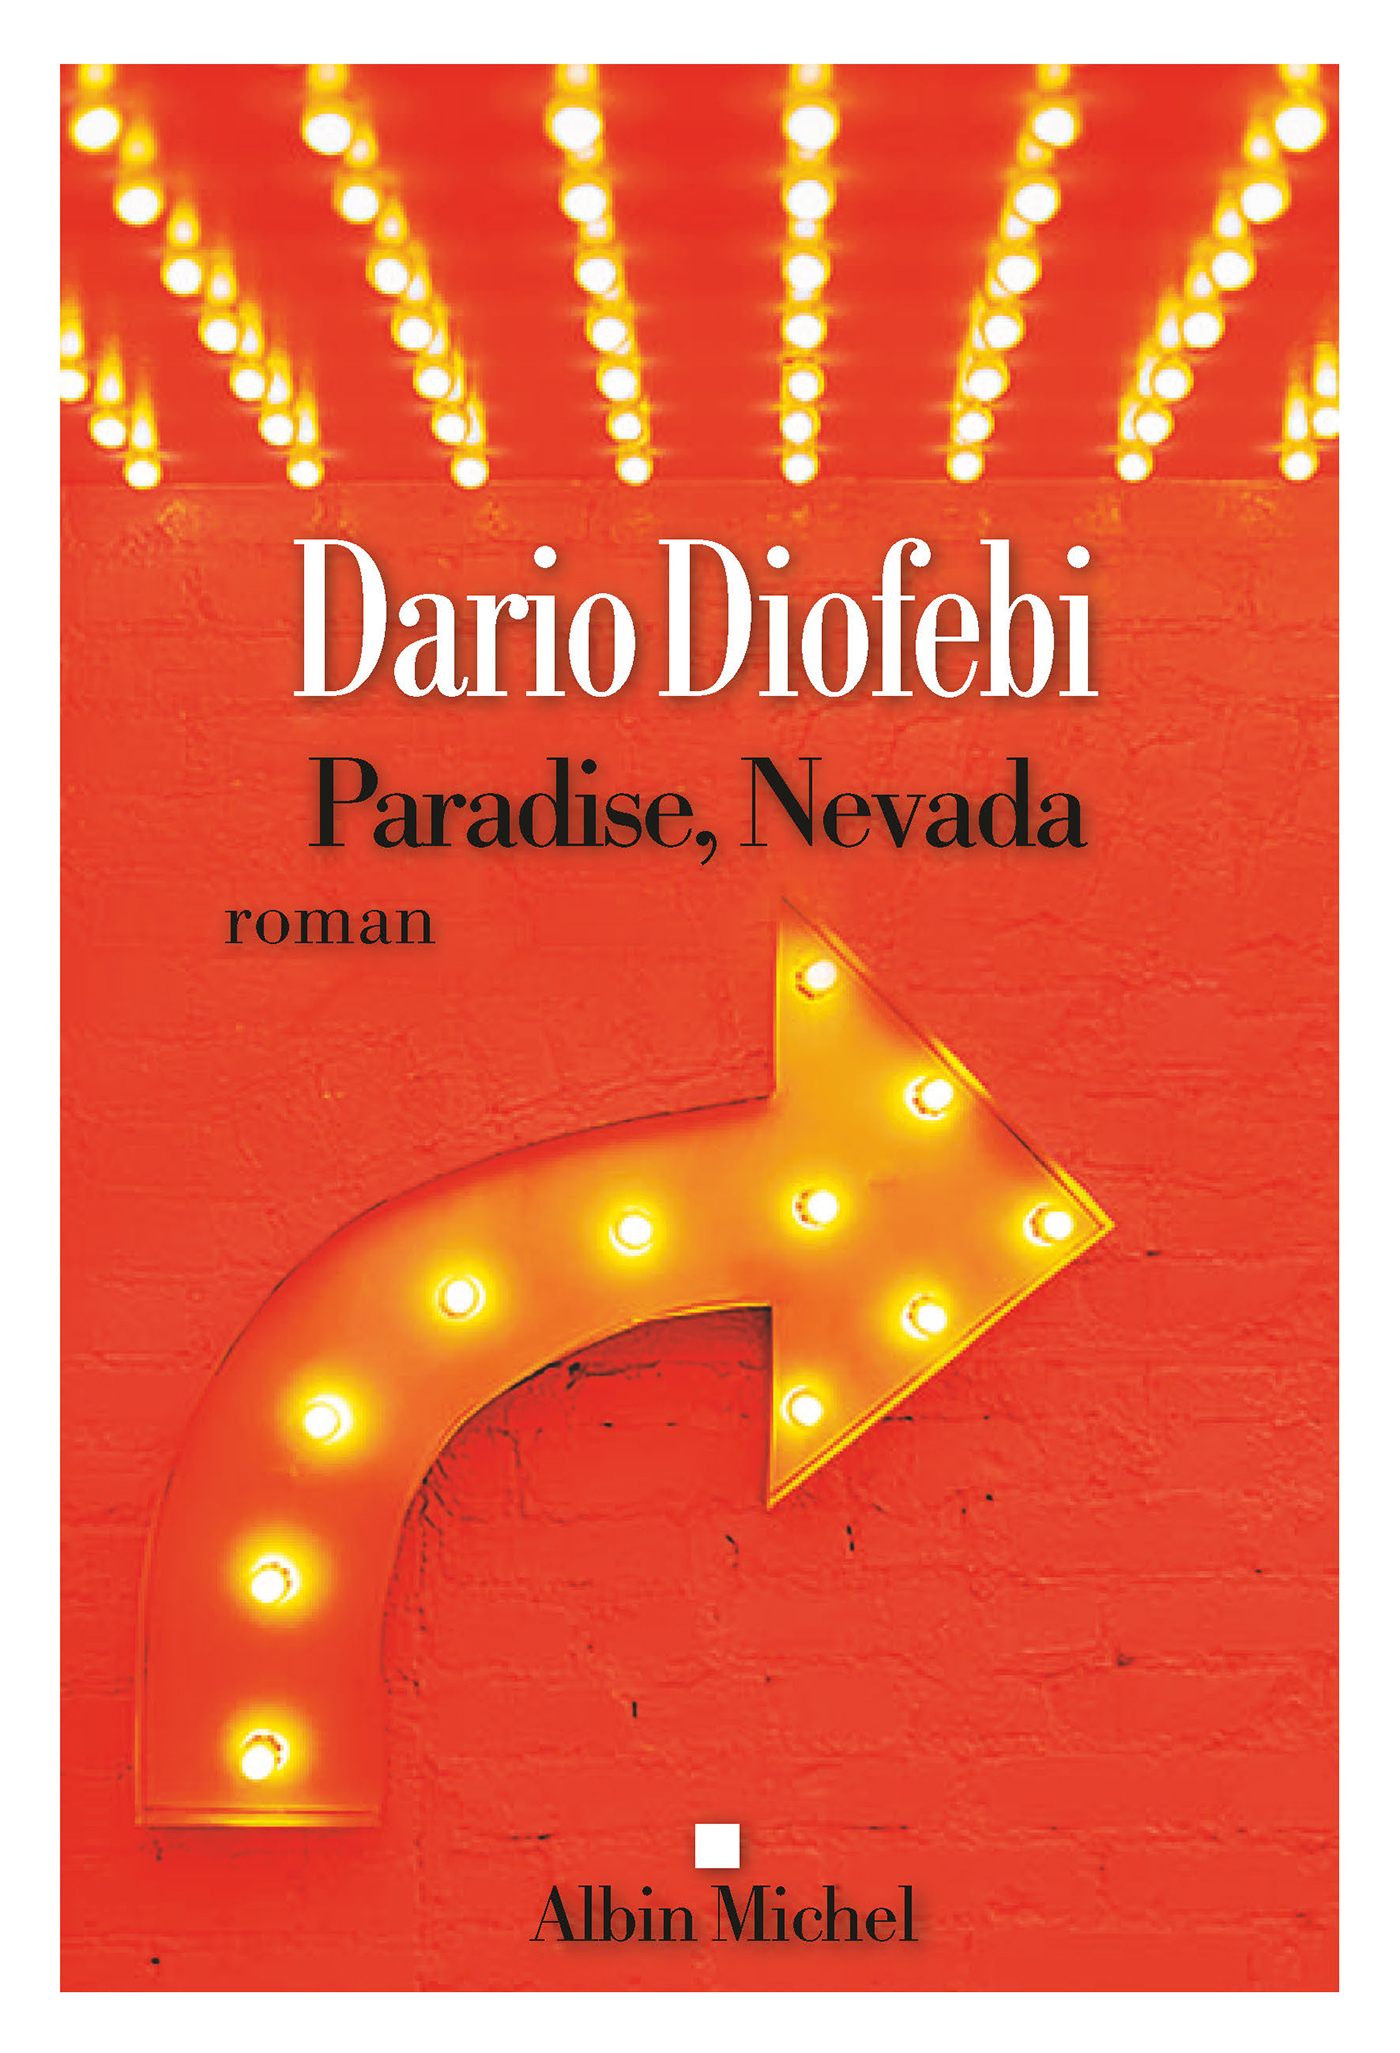 Couverture du livre Paradise, Nevada